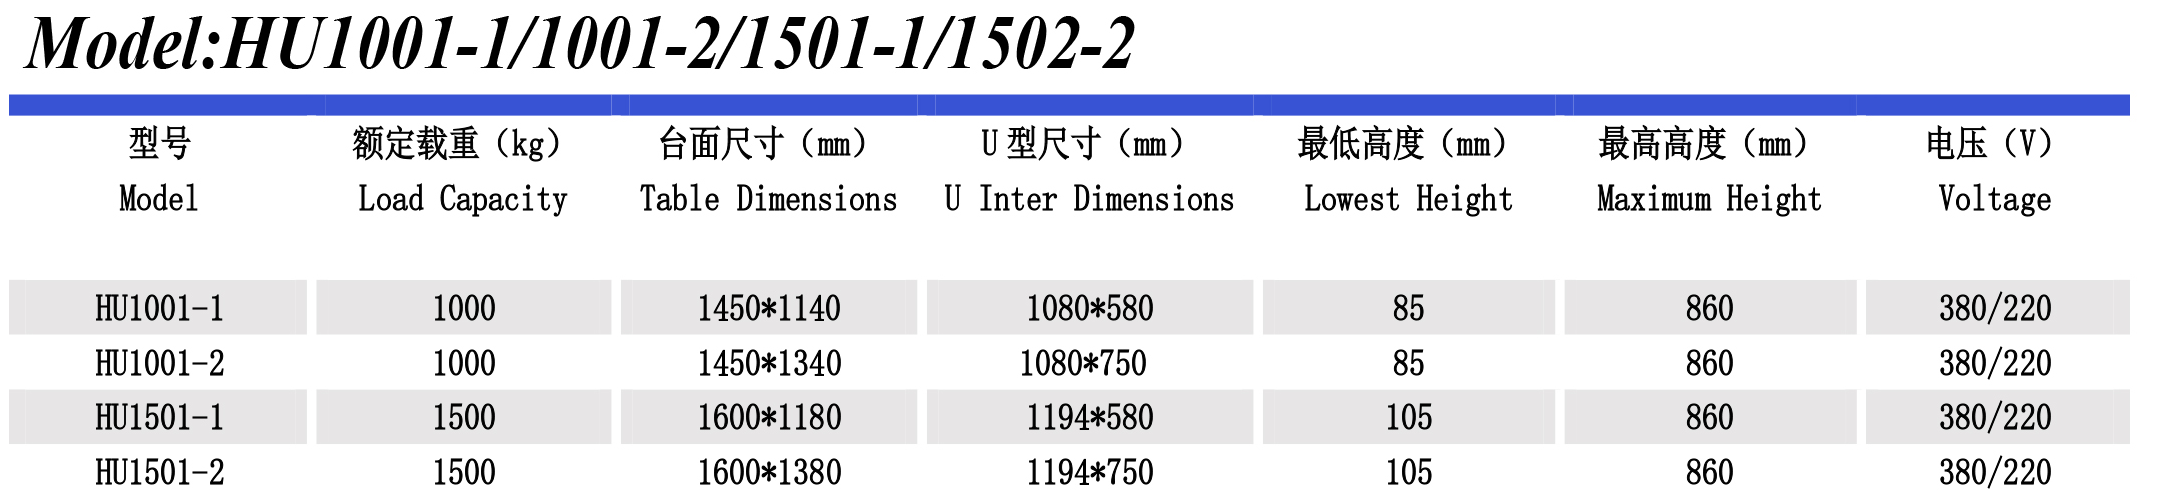 超低升降平臺HU1501-1